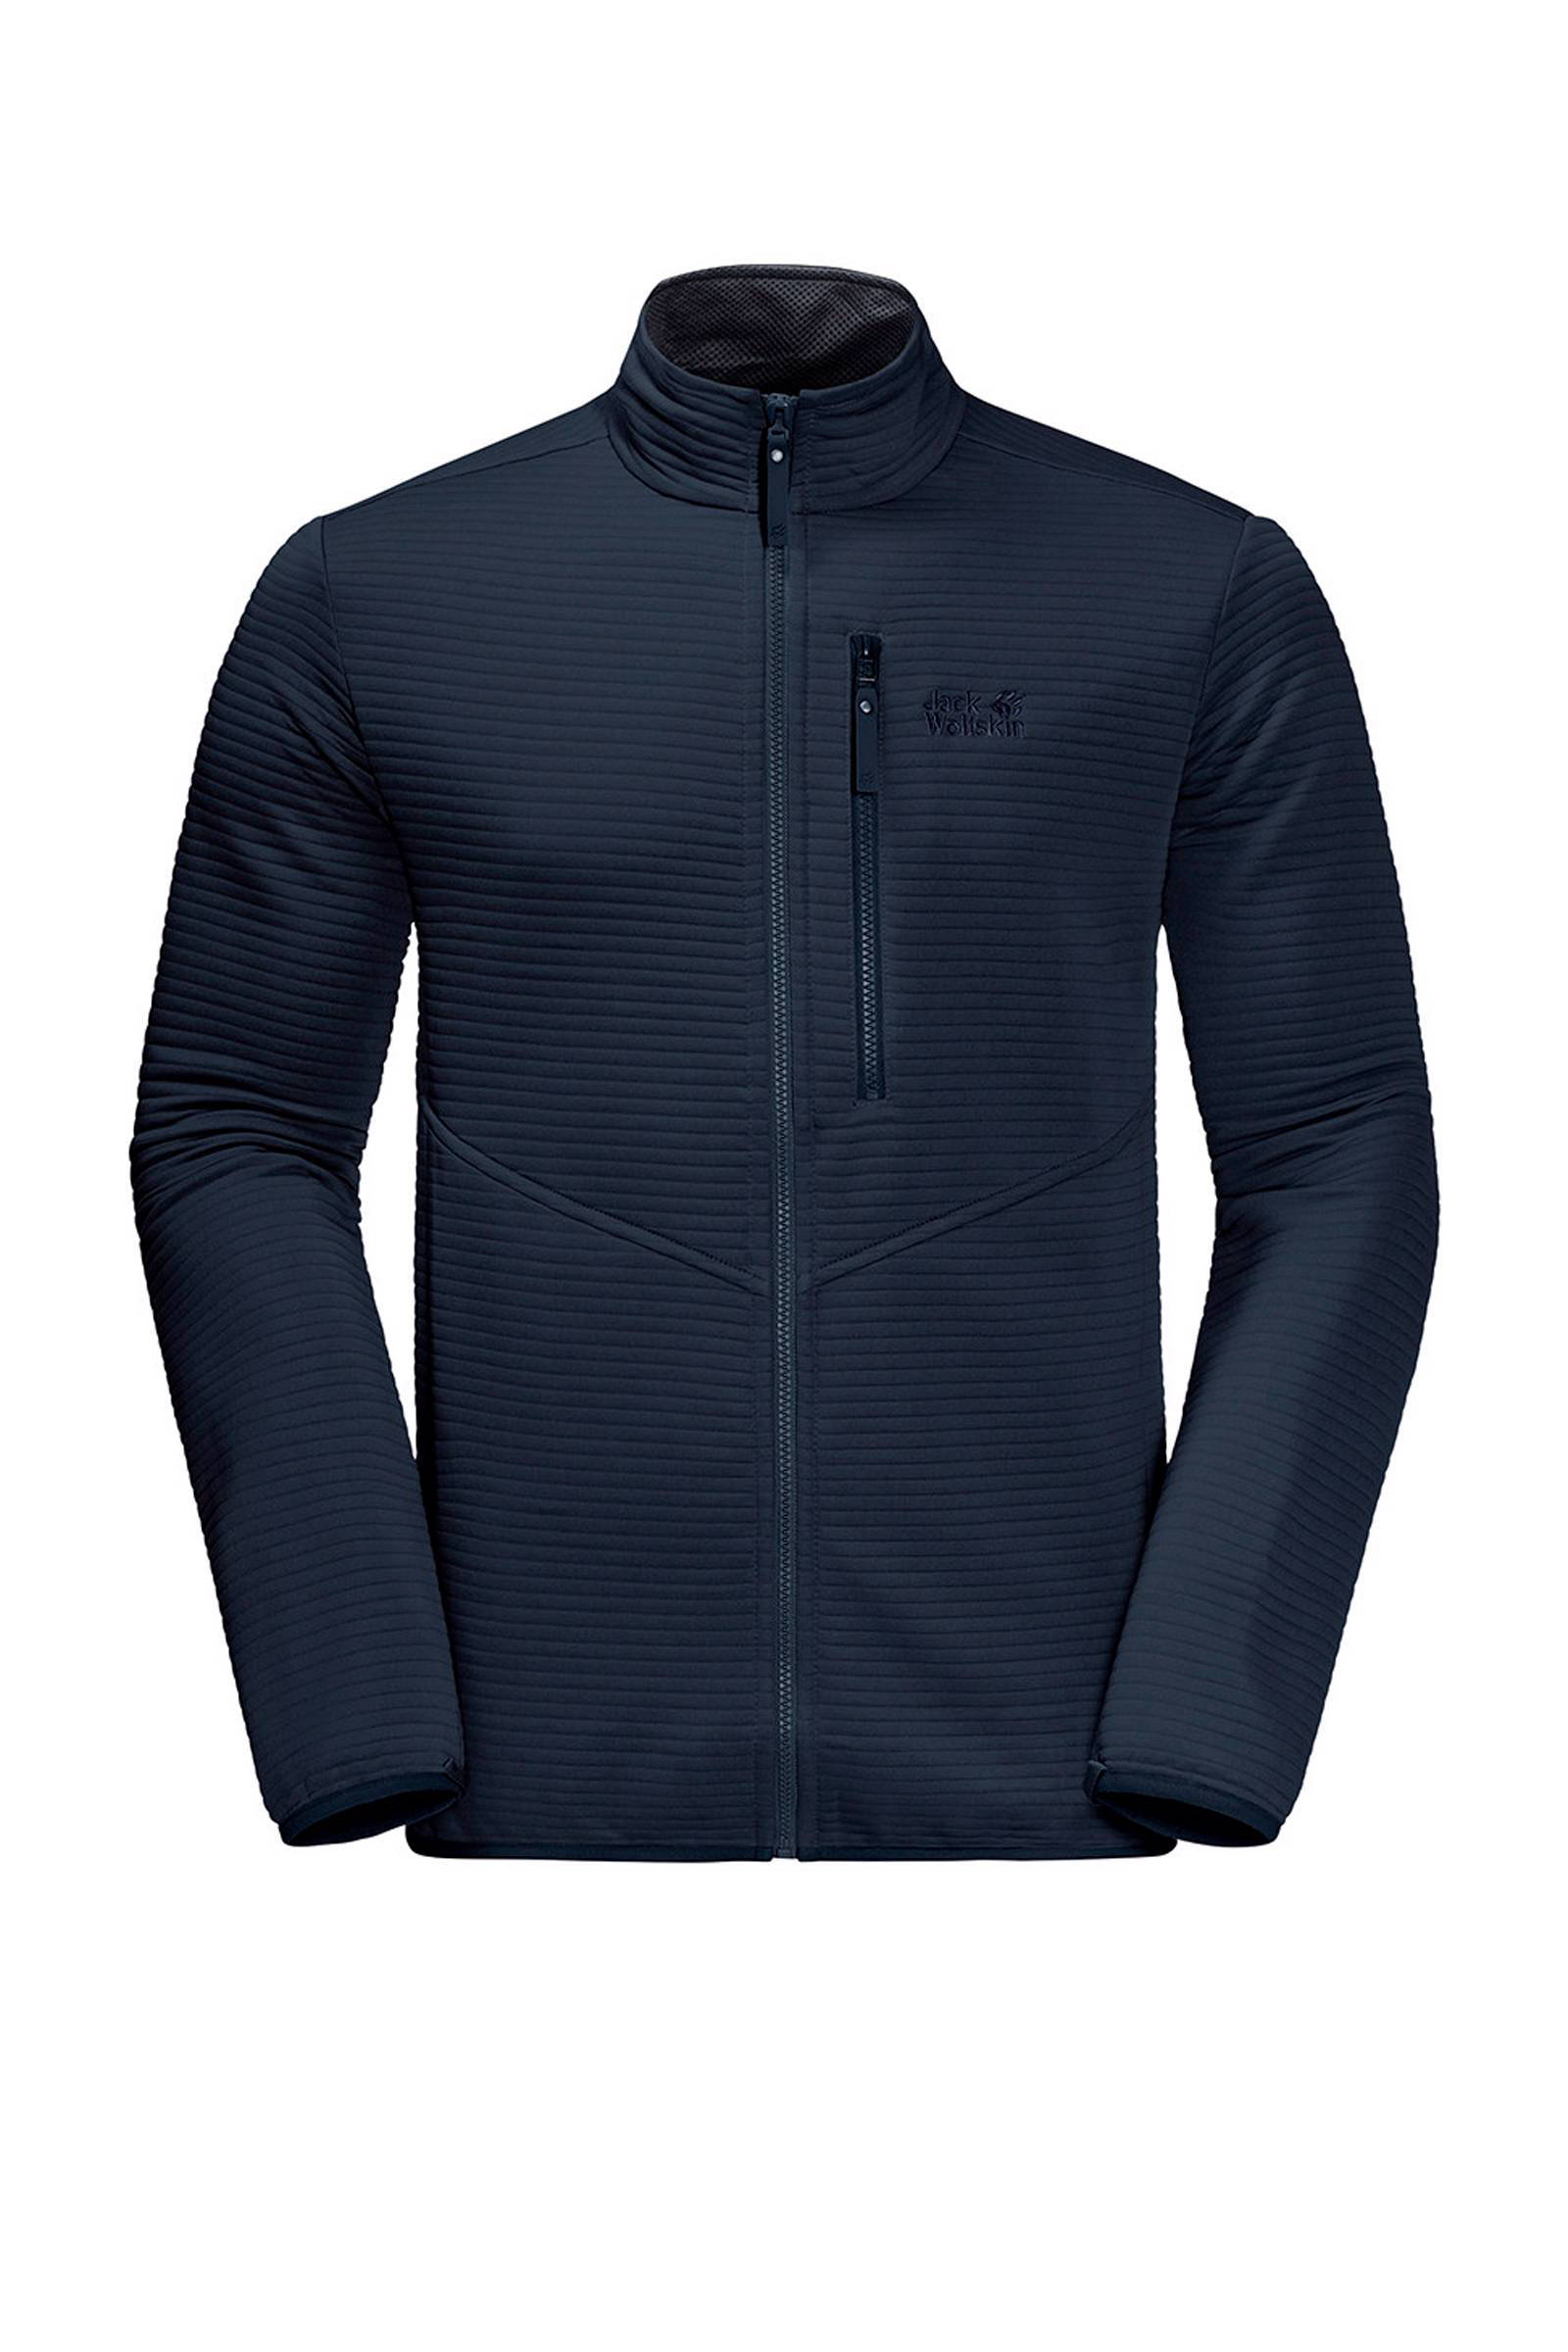 Jack Wolfskin Modesto Fleece Jacket Heren Blauw online kopen